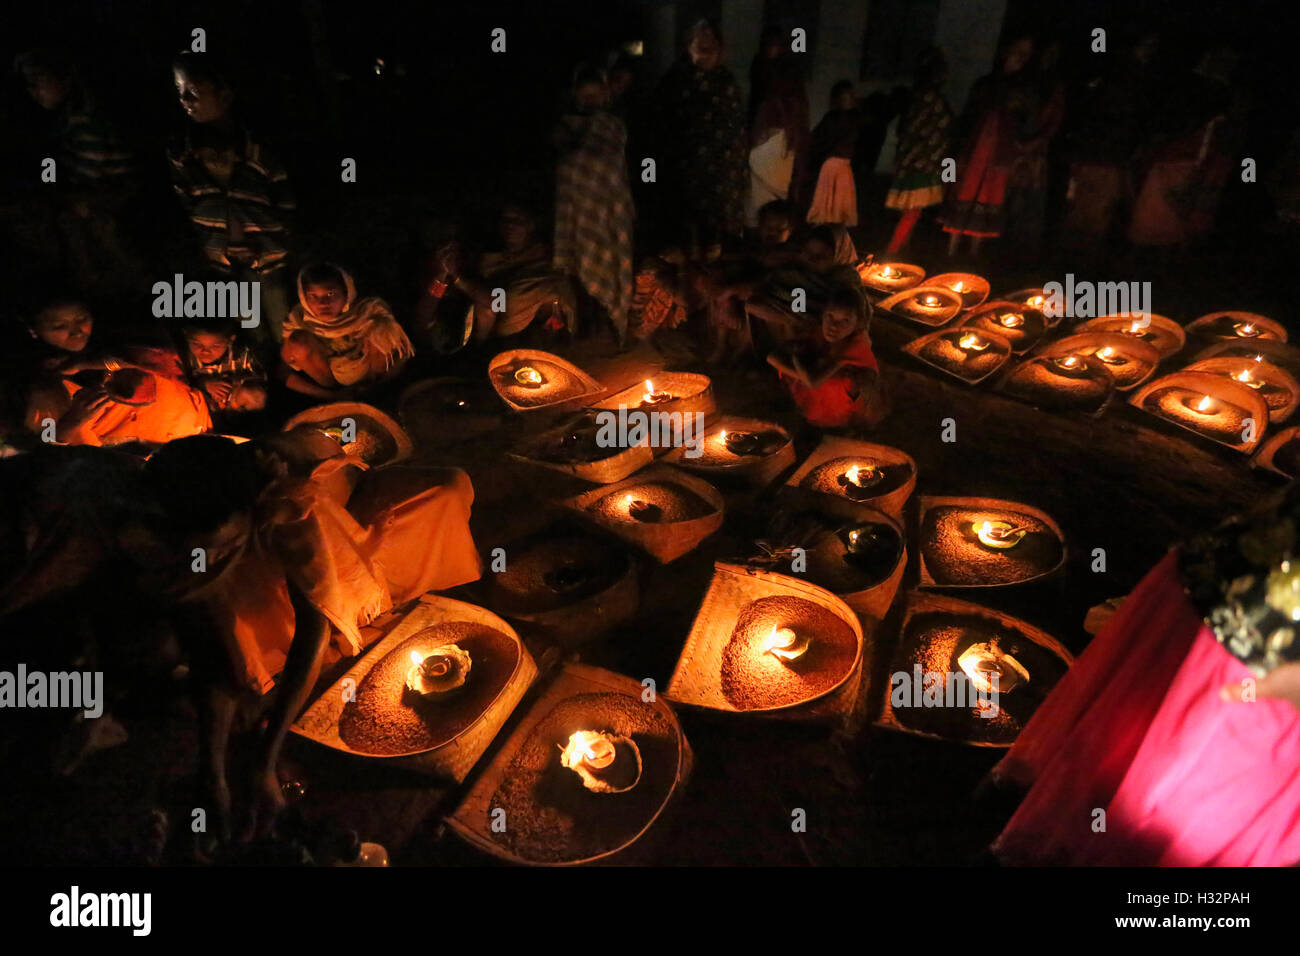 Donne tribali si sono riuniti insieme a metà della notte per celebrare Diyari Festival, tribù PARAJA, Sandhkarmari Village, Jagdalpur Tehsil, Foto Stock